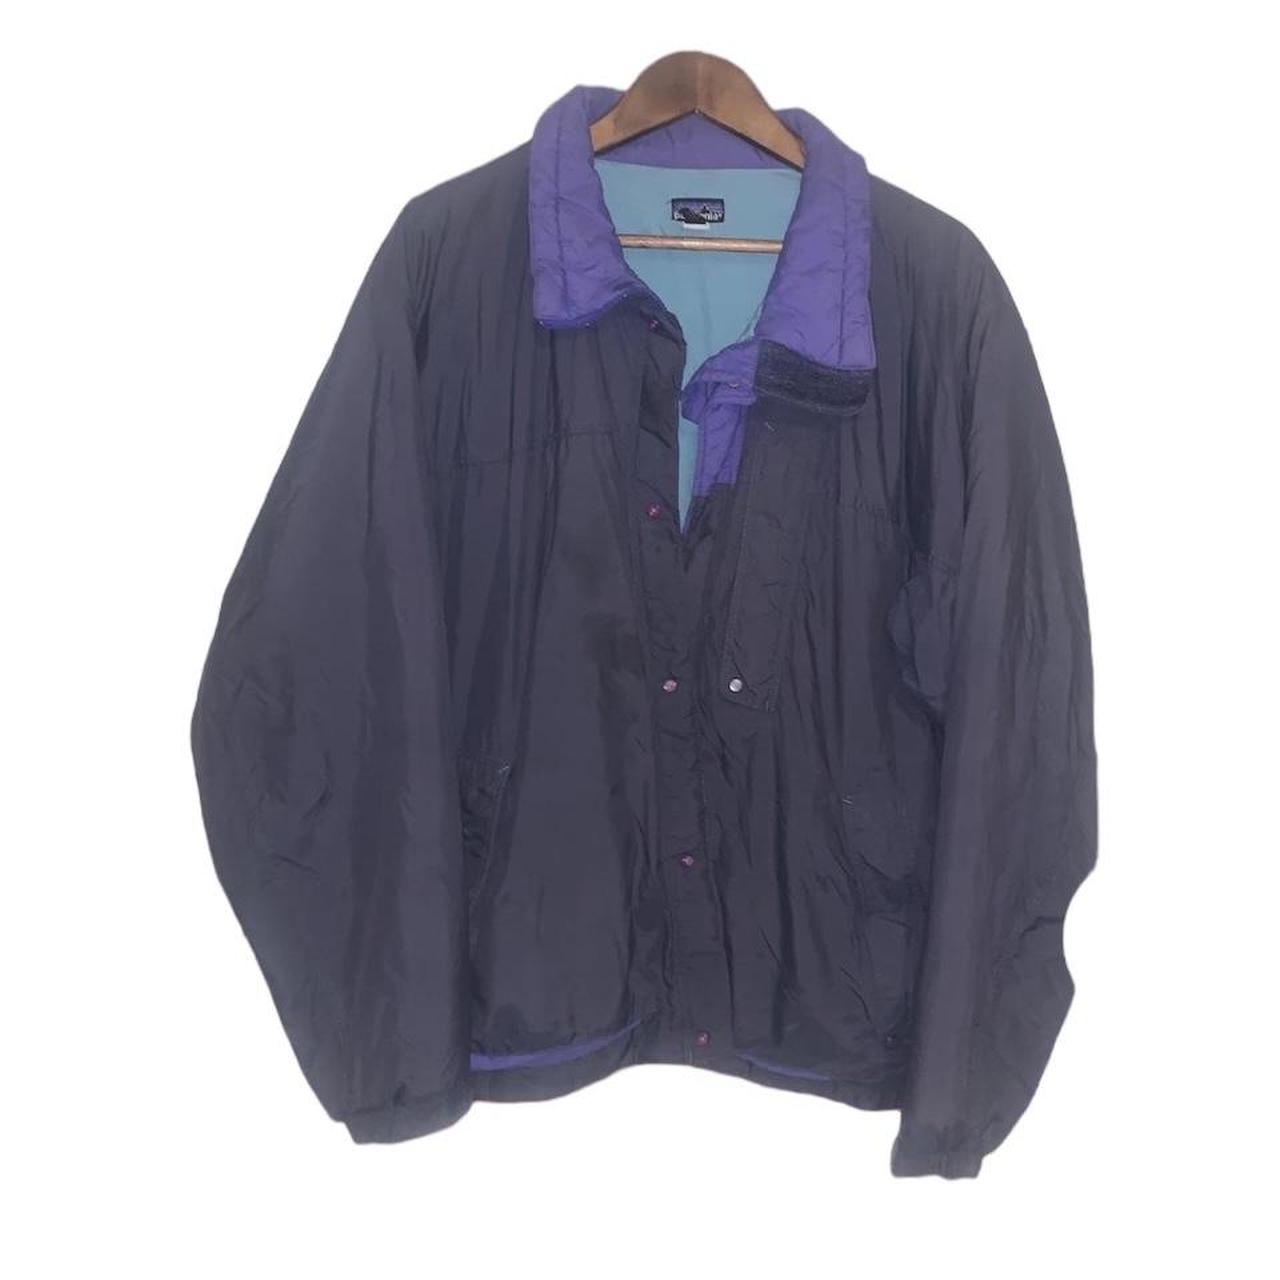 Patagonia vintage jacket - Depop